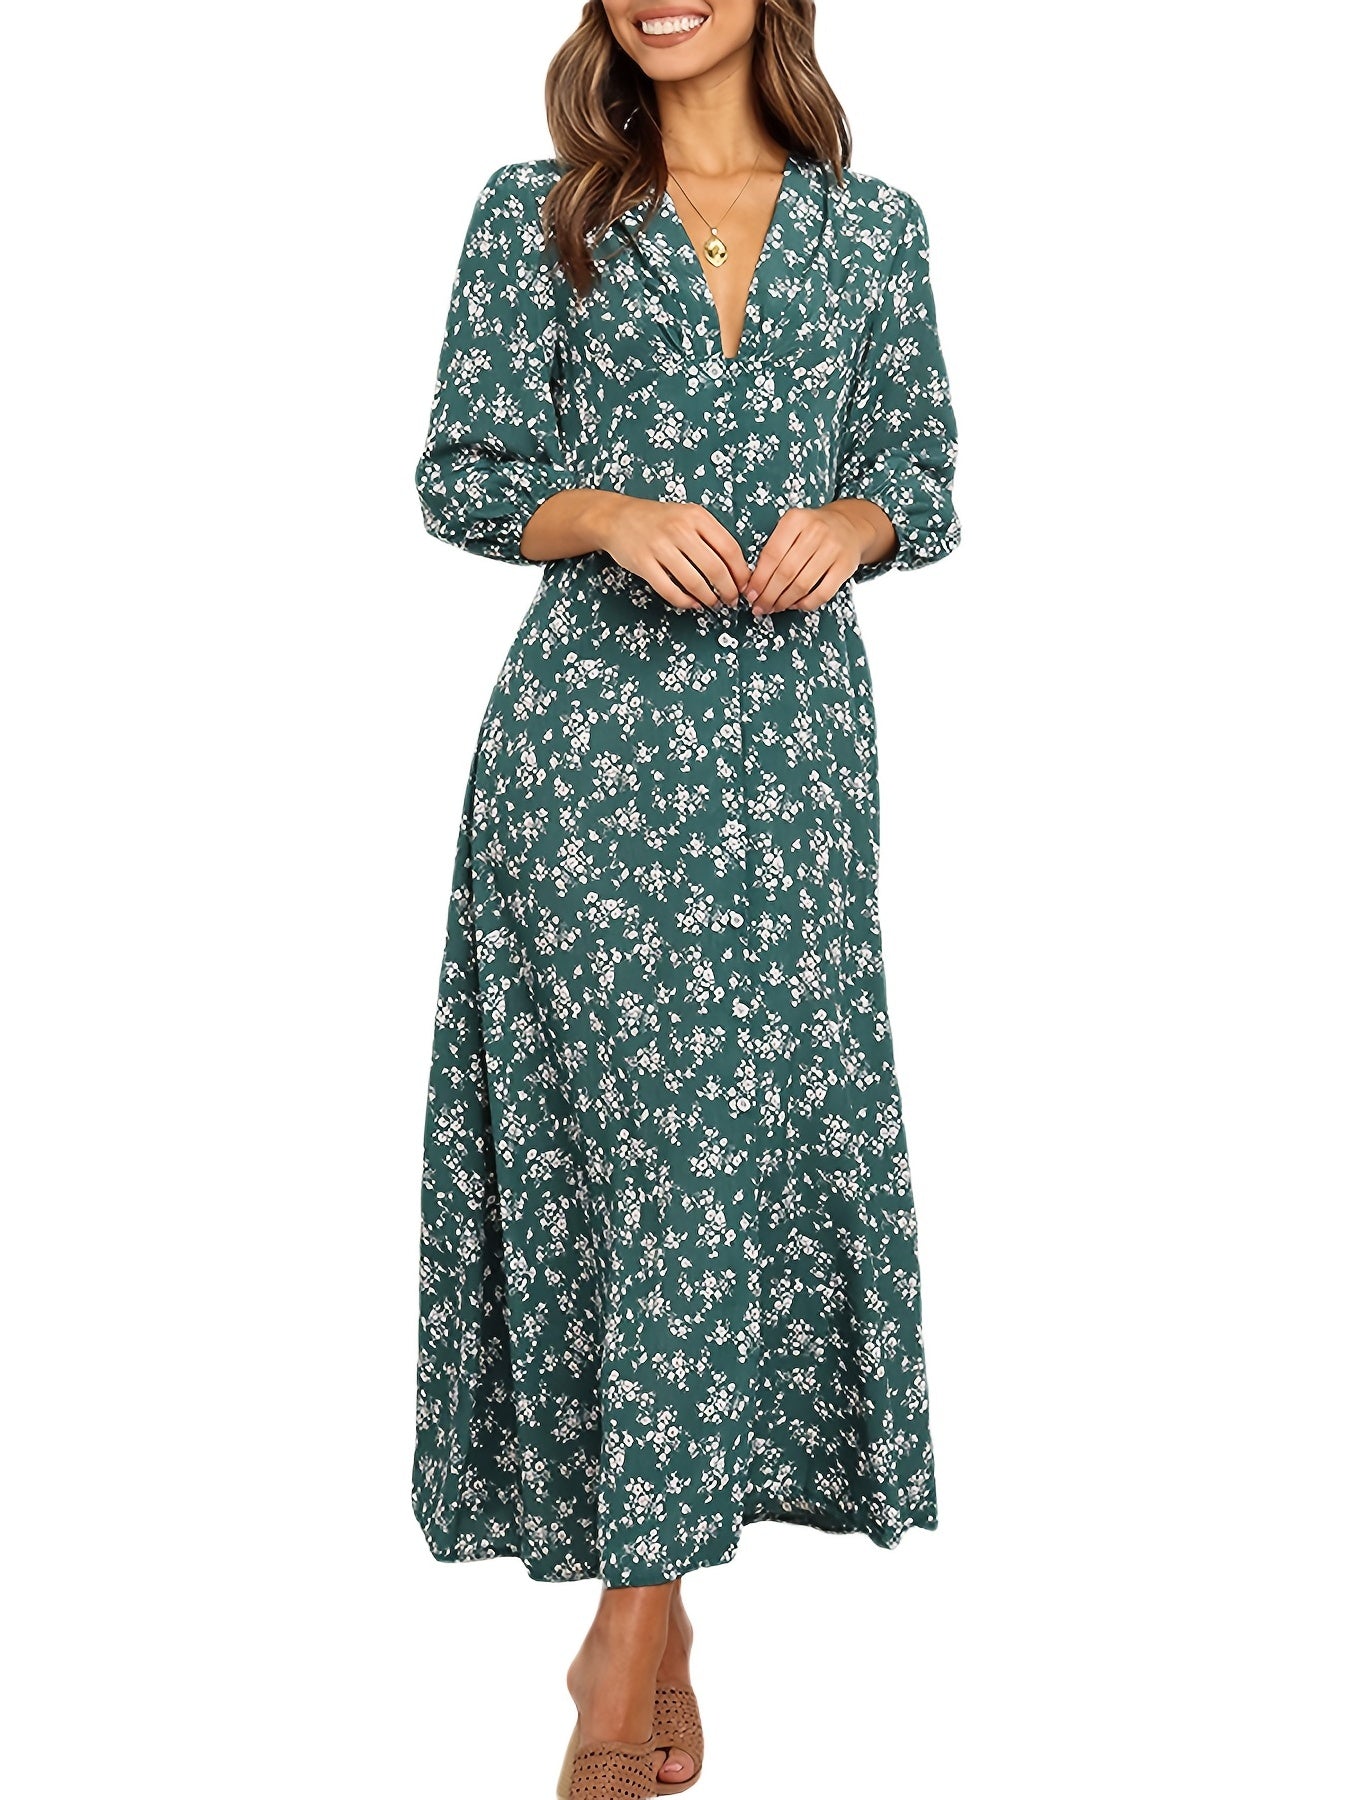 Dirty Floral V-Neck Maxi Dress: Ruffled High Waist Summer Dress for Women